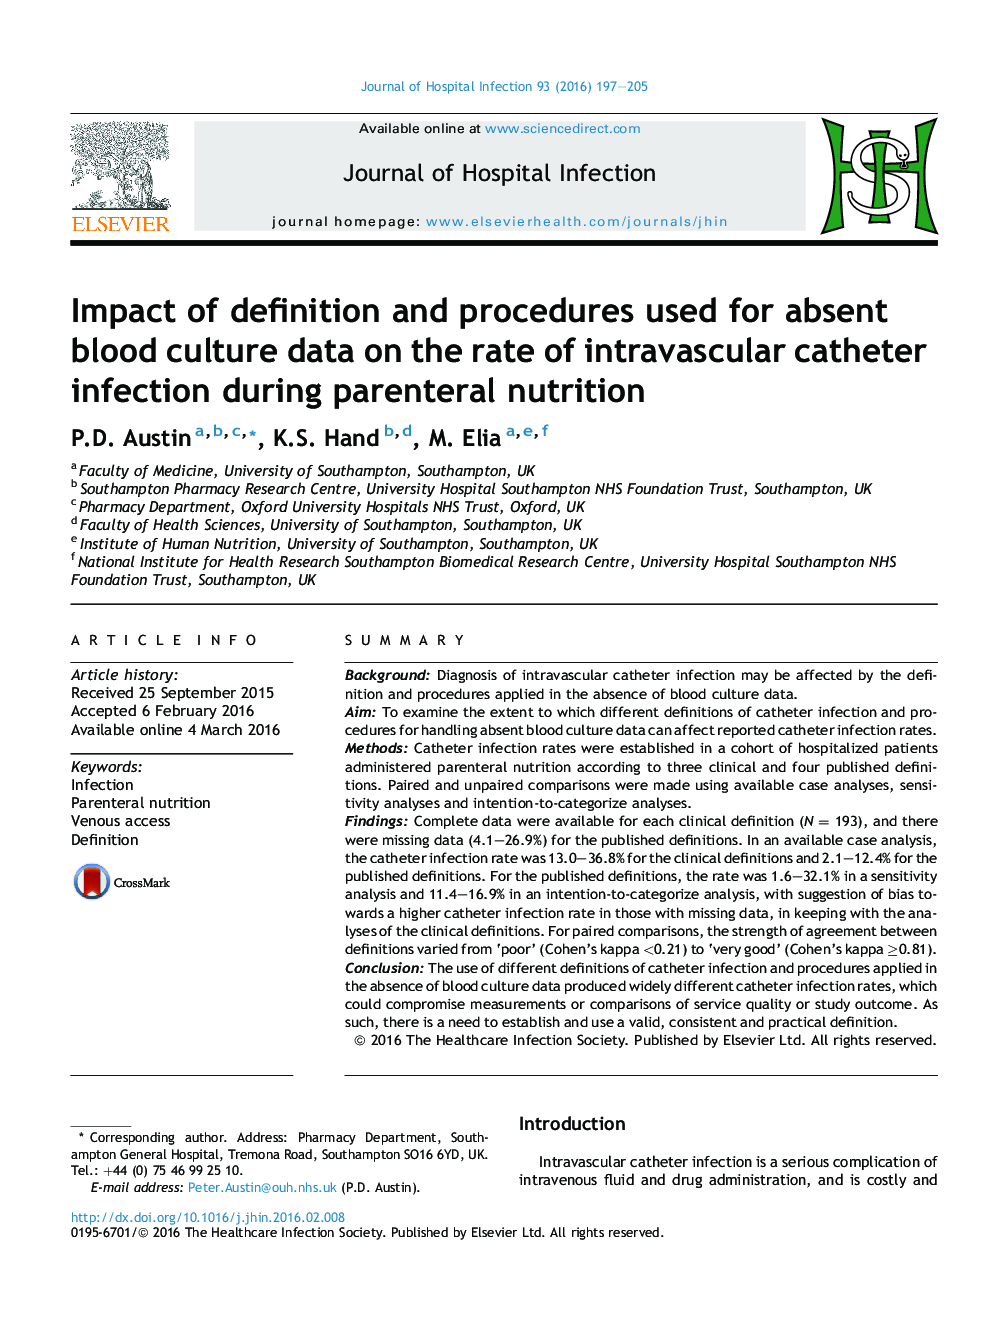 تاثیر تعاریف و روش های استفاده شده برای داده های کشت خون غیرواقعی بر میزان عفونت کاتتر داخل عروقی در طی تغذیه سالم 